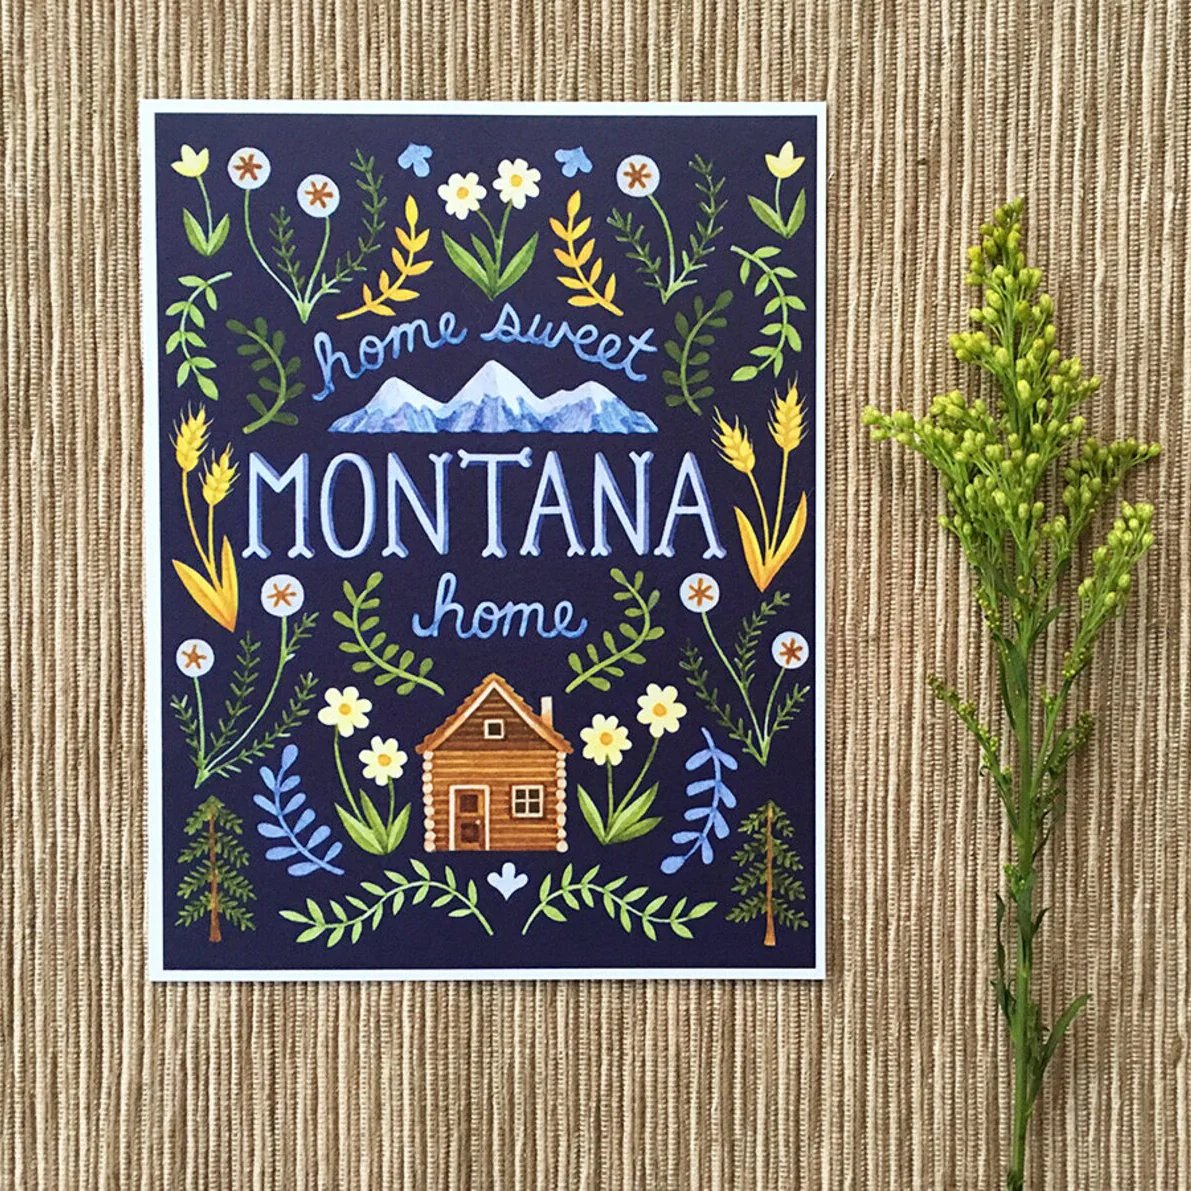 Home Sweet Home Montana